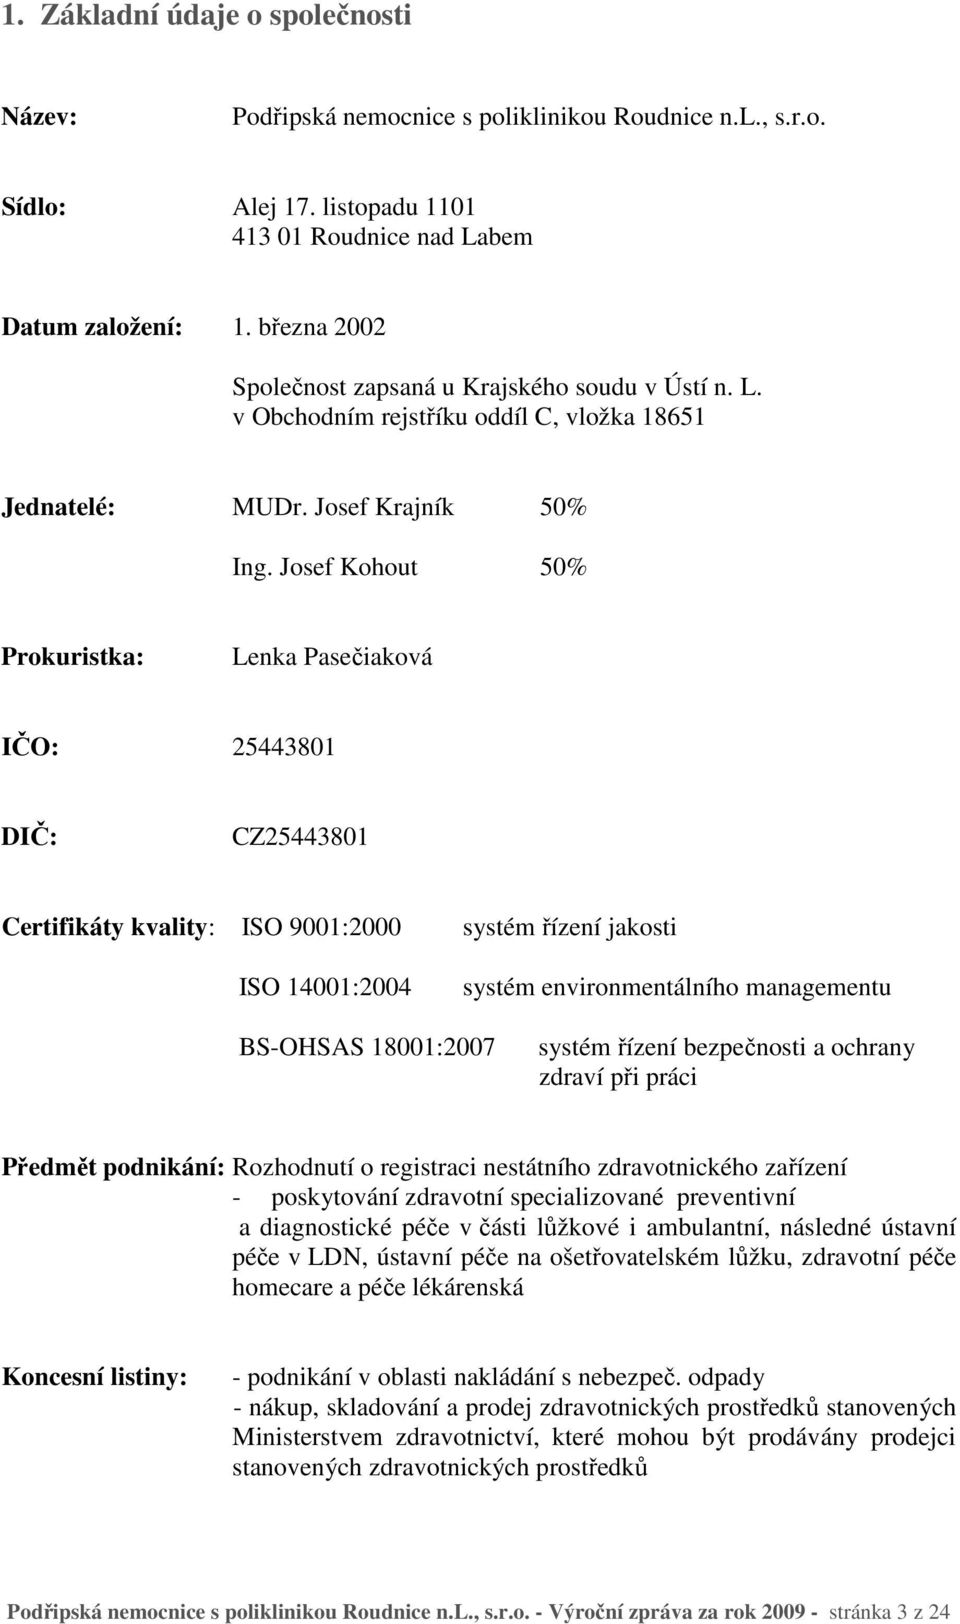 Josef Kohout 50% Prokuristka: Lenka Pasečiaková IČO: 25443801 DIČ: CZ25443801 Certifikáty kvality: ISO 9001:2000 systém řízení jakosti ISO 14001:2004 systém environmentálního managementu BS-OHSAS